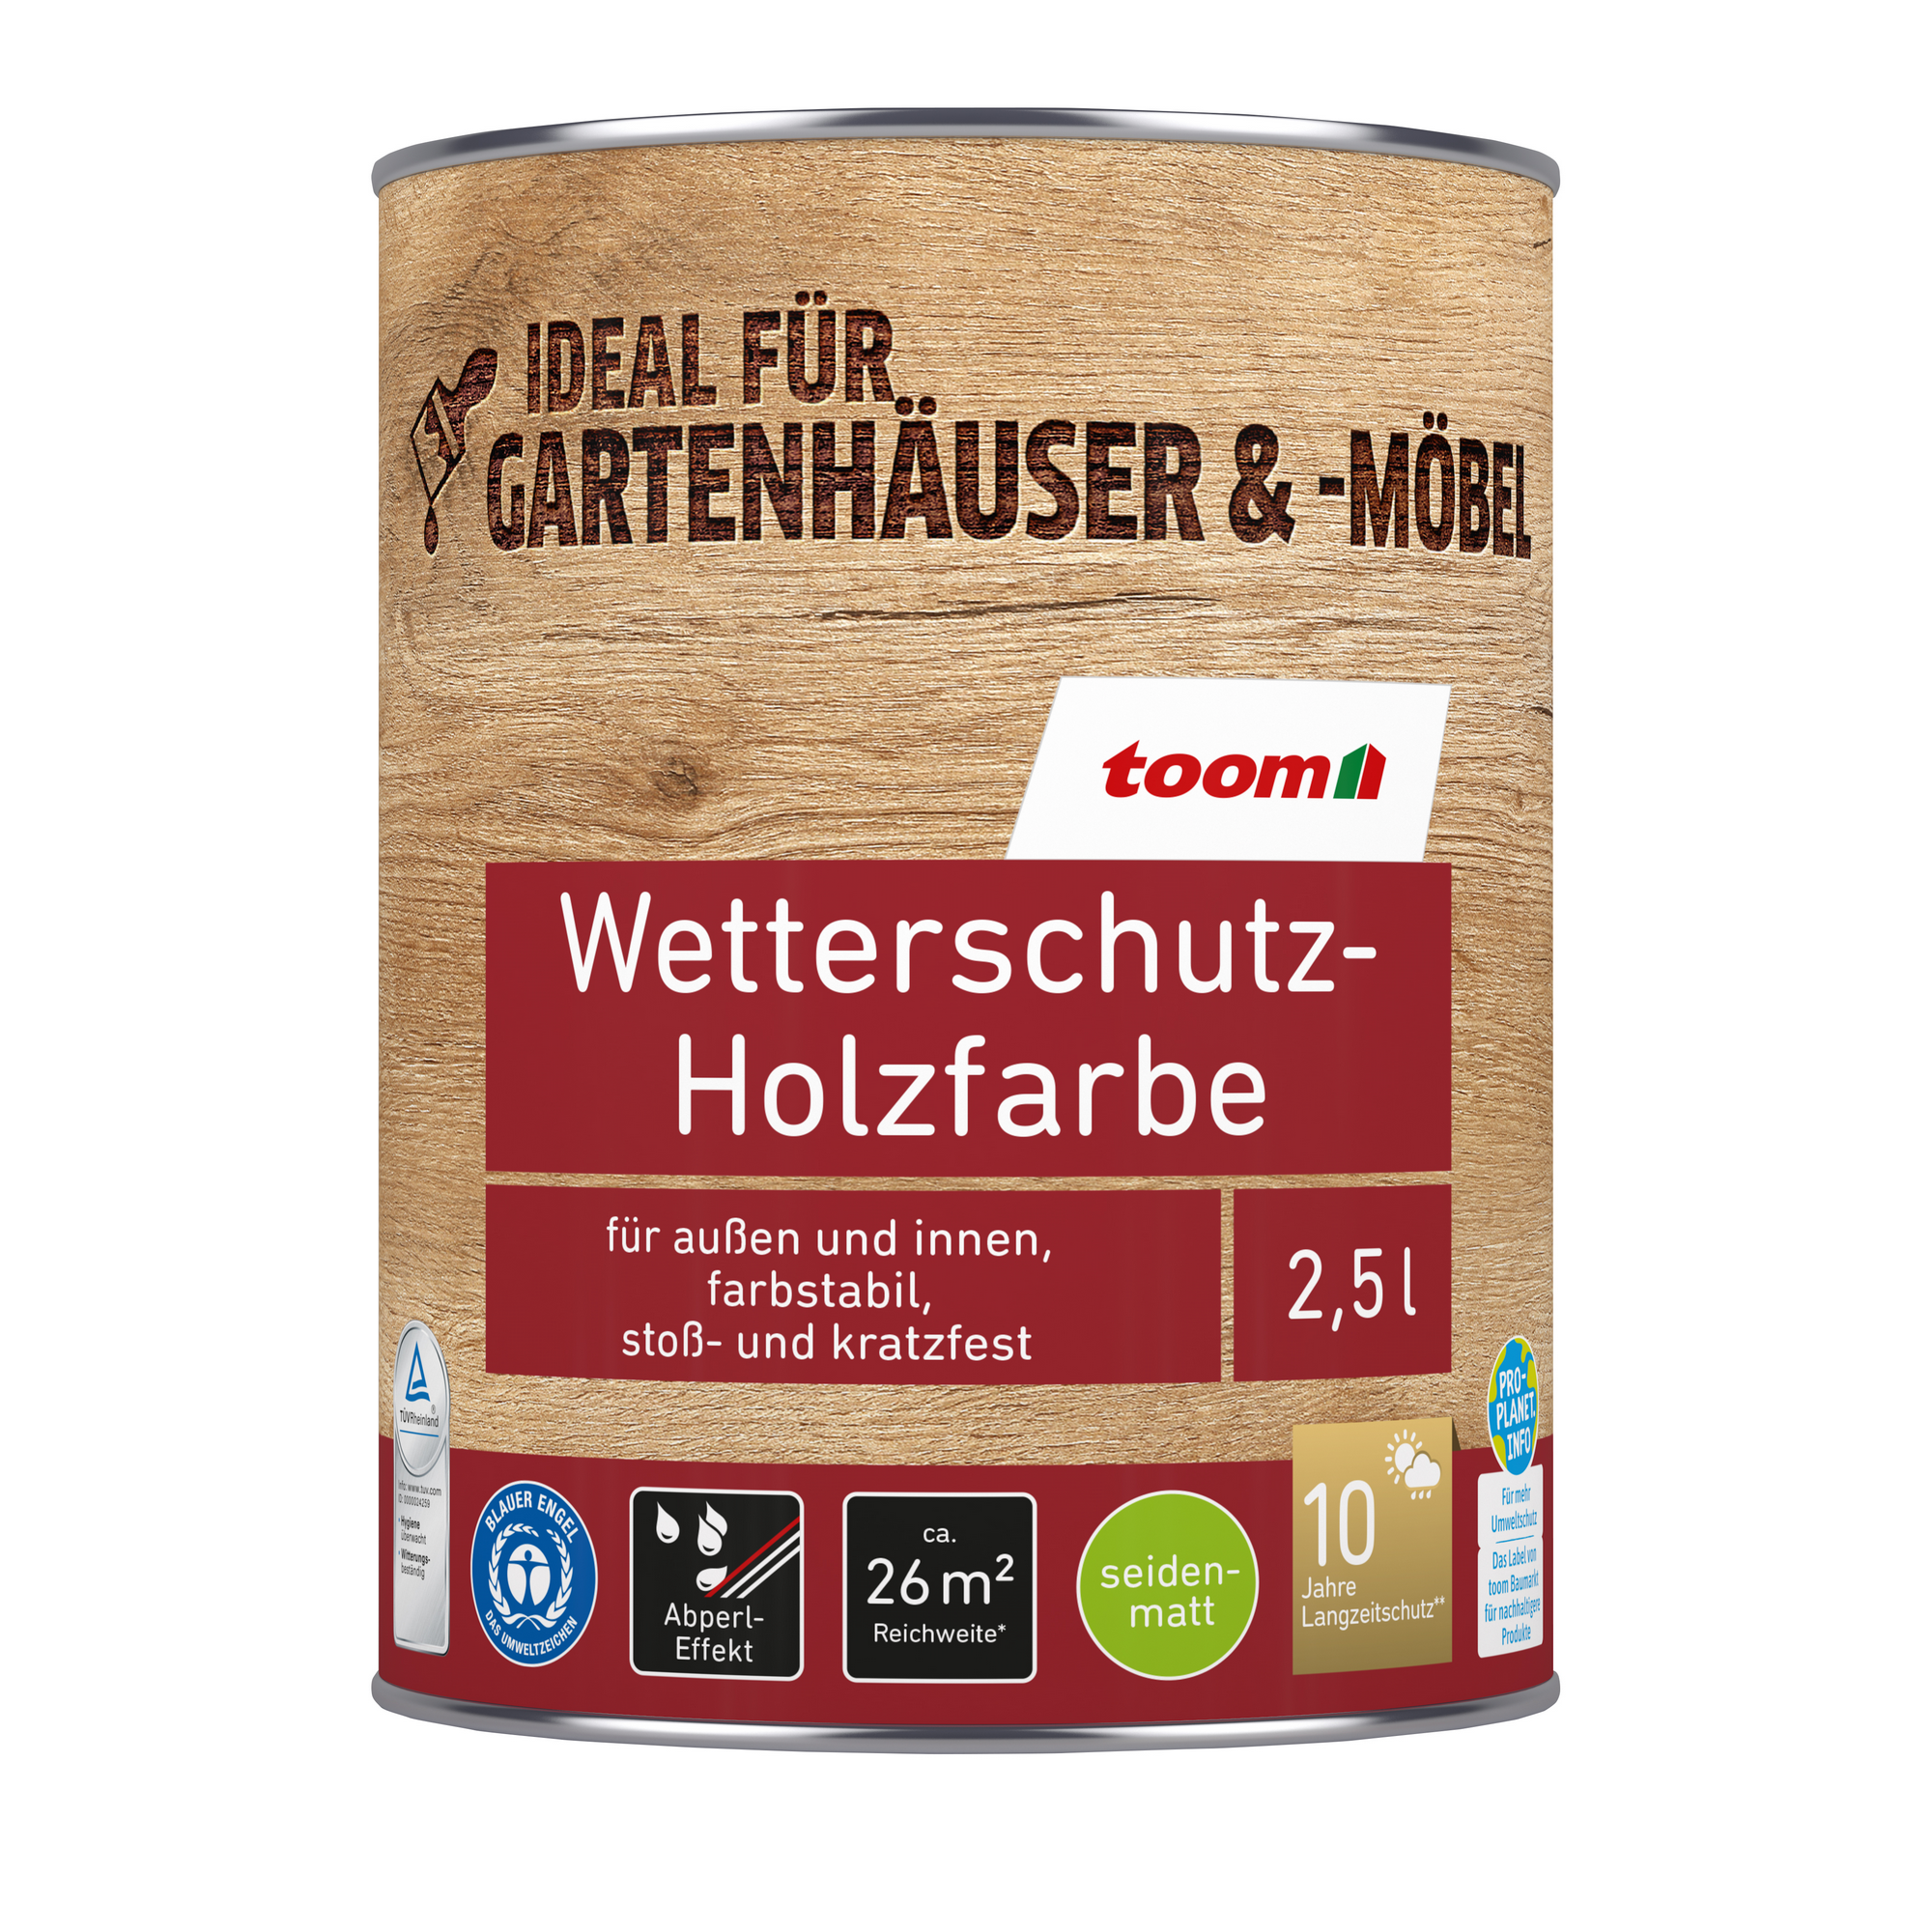 Wetterschutz-Holzfarbe weiß 2,5 l + product picture